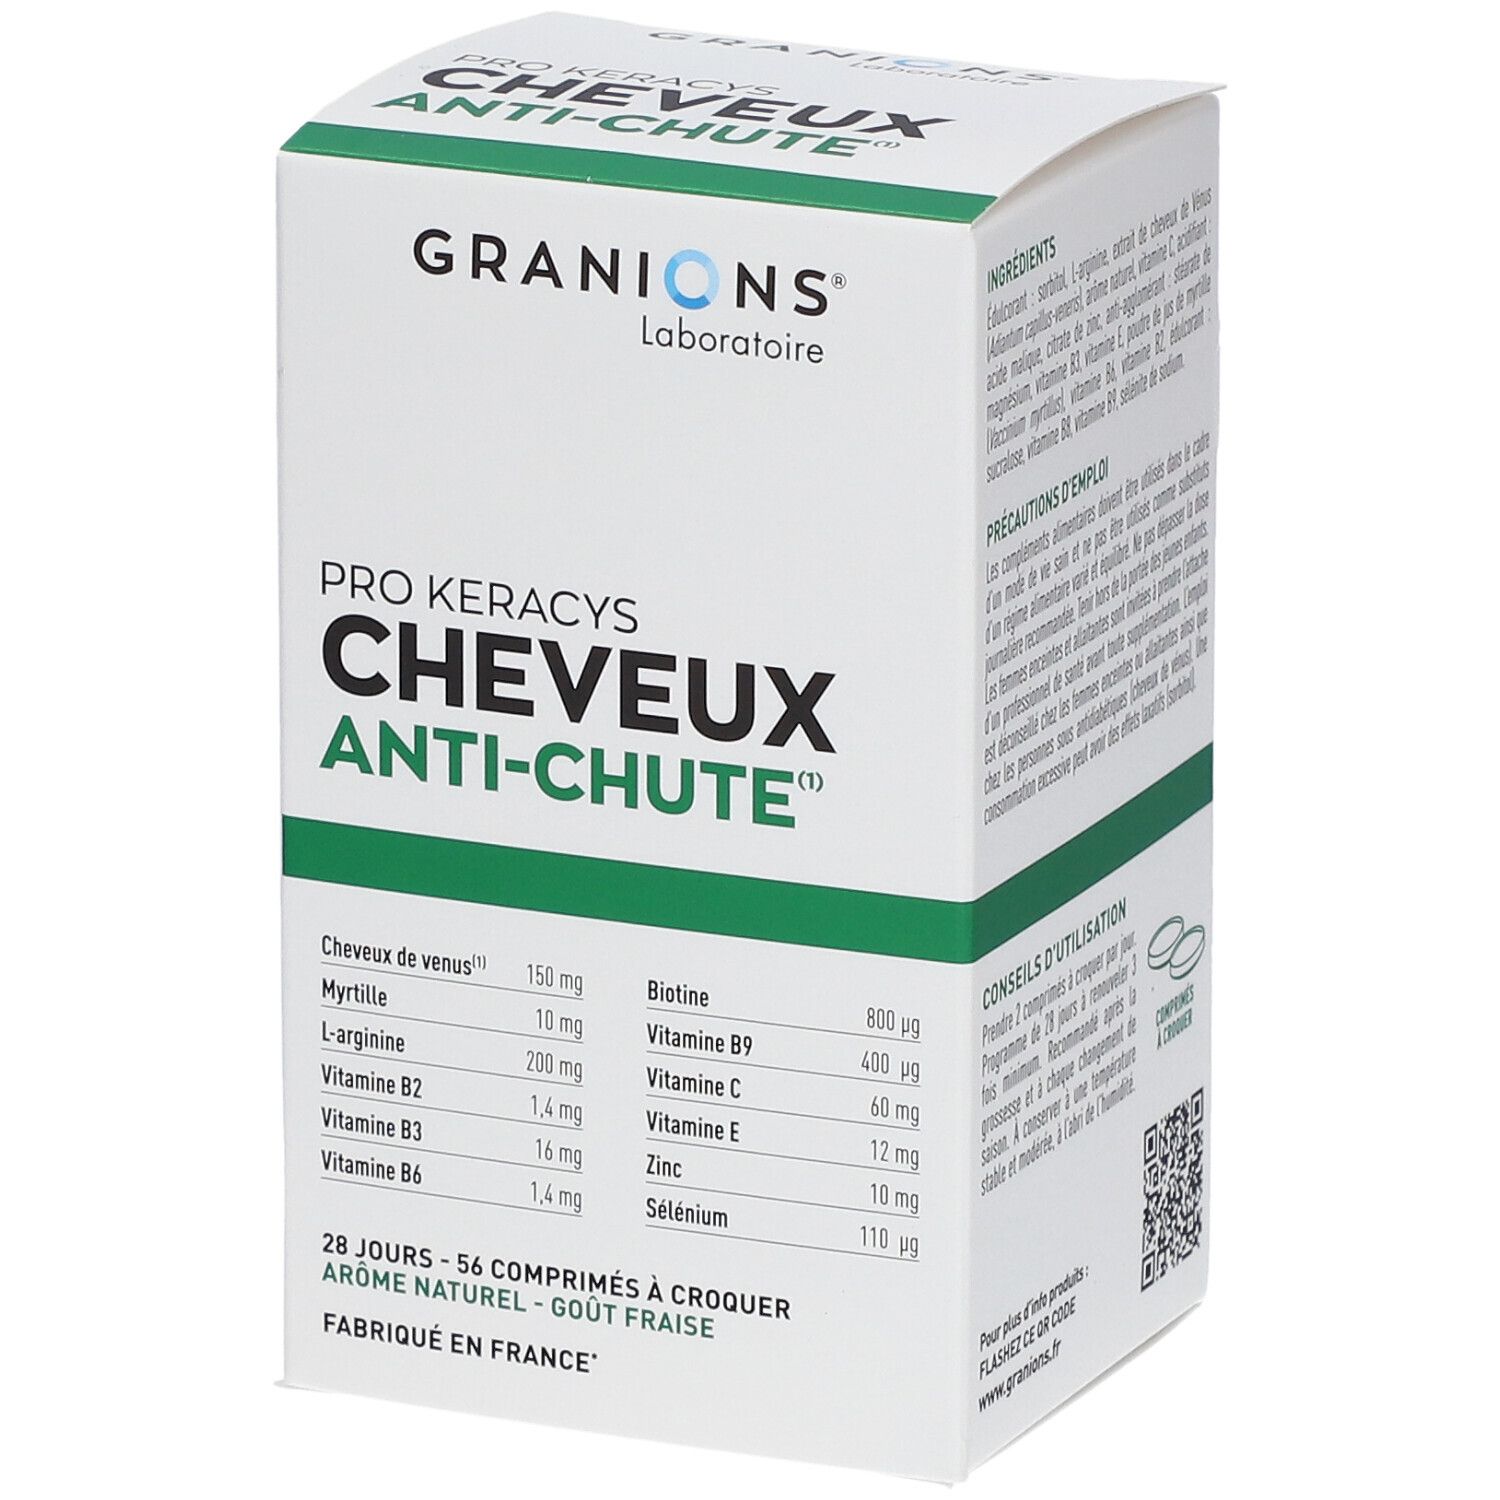 Granions® Pro Keracys Cheveux - Anti-chute